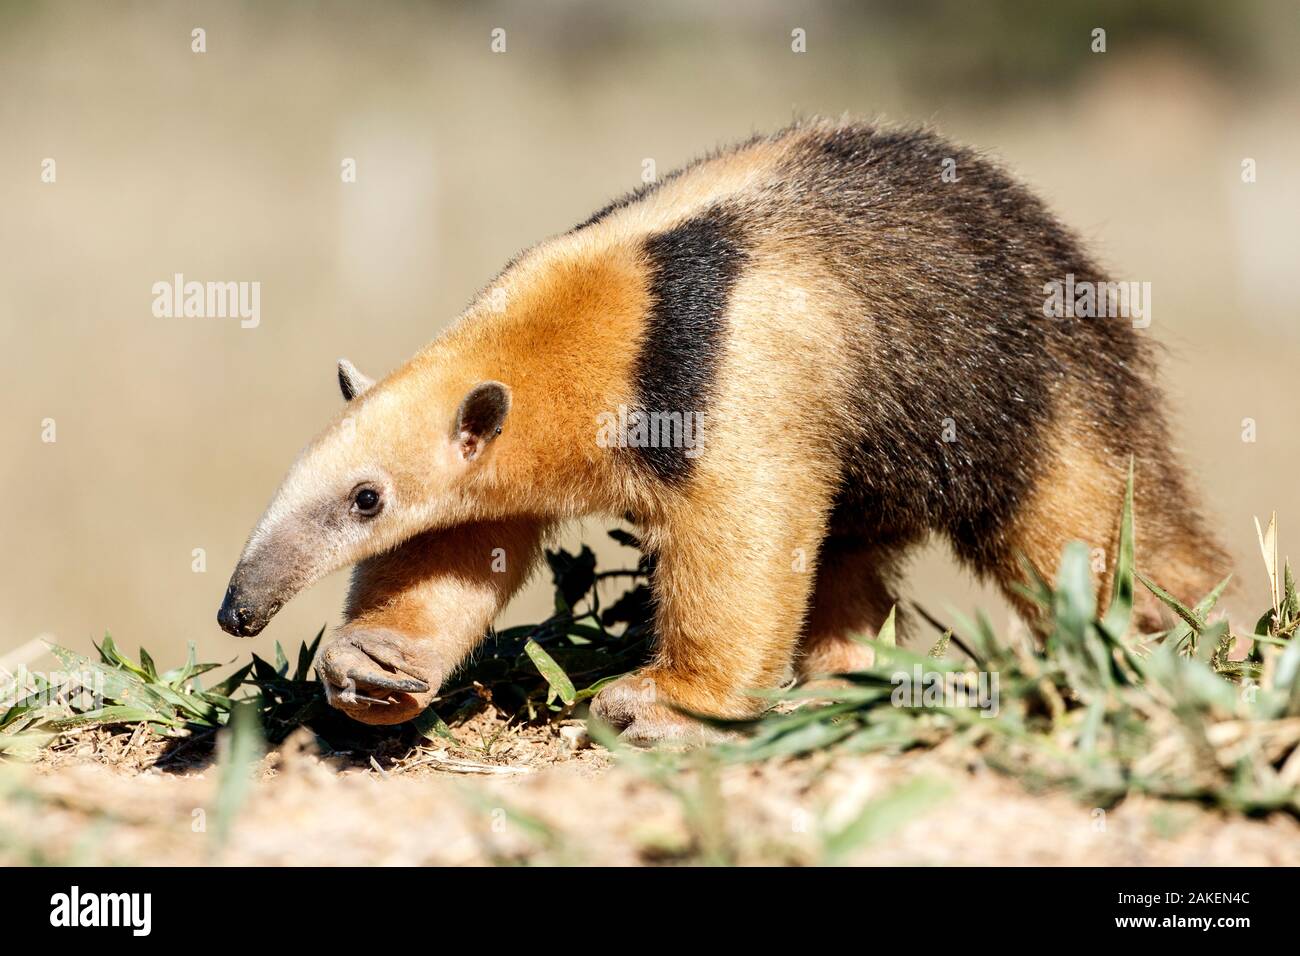 Southern anteater (Tamandua tetradactyla) Formoso River, Bonito, Mato Grosso do Sul, Brazil Stock Photo